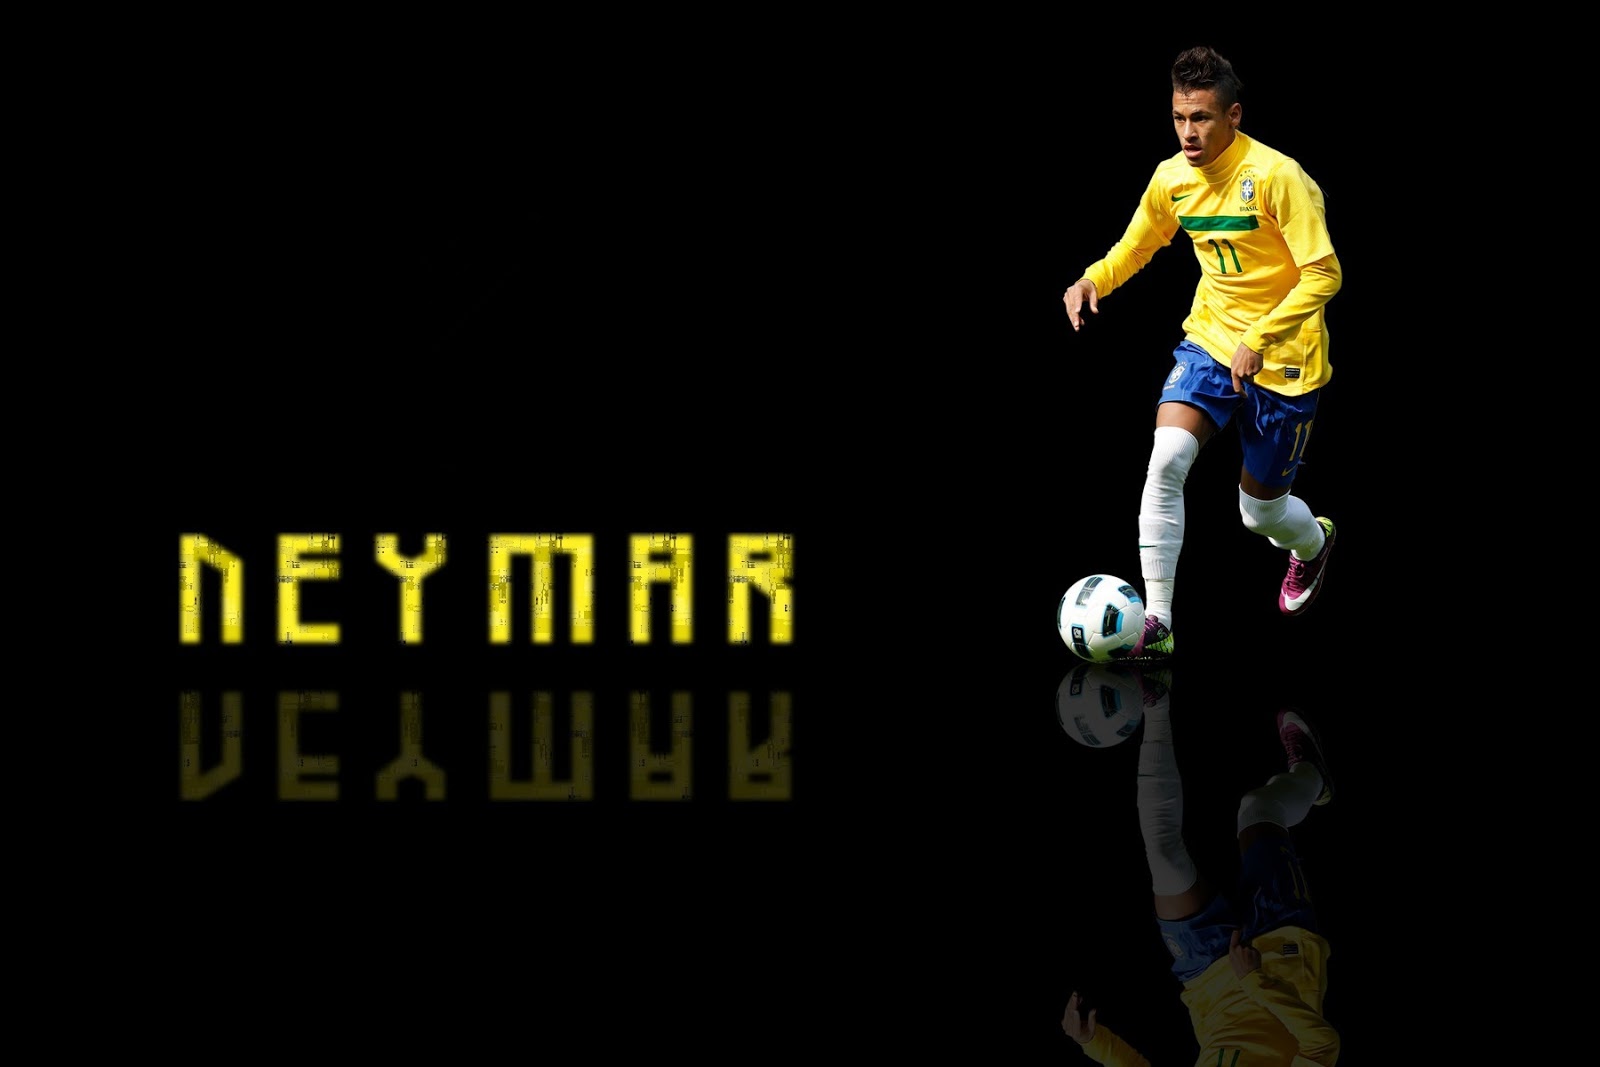 http://1.bp.blogspot.com/-94DNAmE8DiU/UIgz6wItSbI/AAAAAAAAGLM/EMmoIbuMw24/s1600/Neymar+new+hd+wallpapers+2012-2013+10.jpg